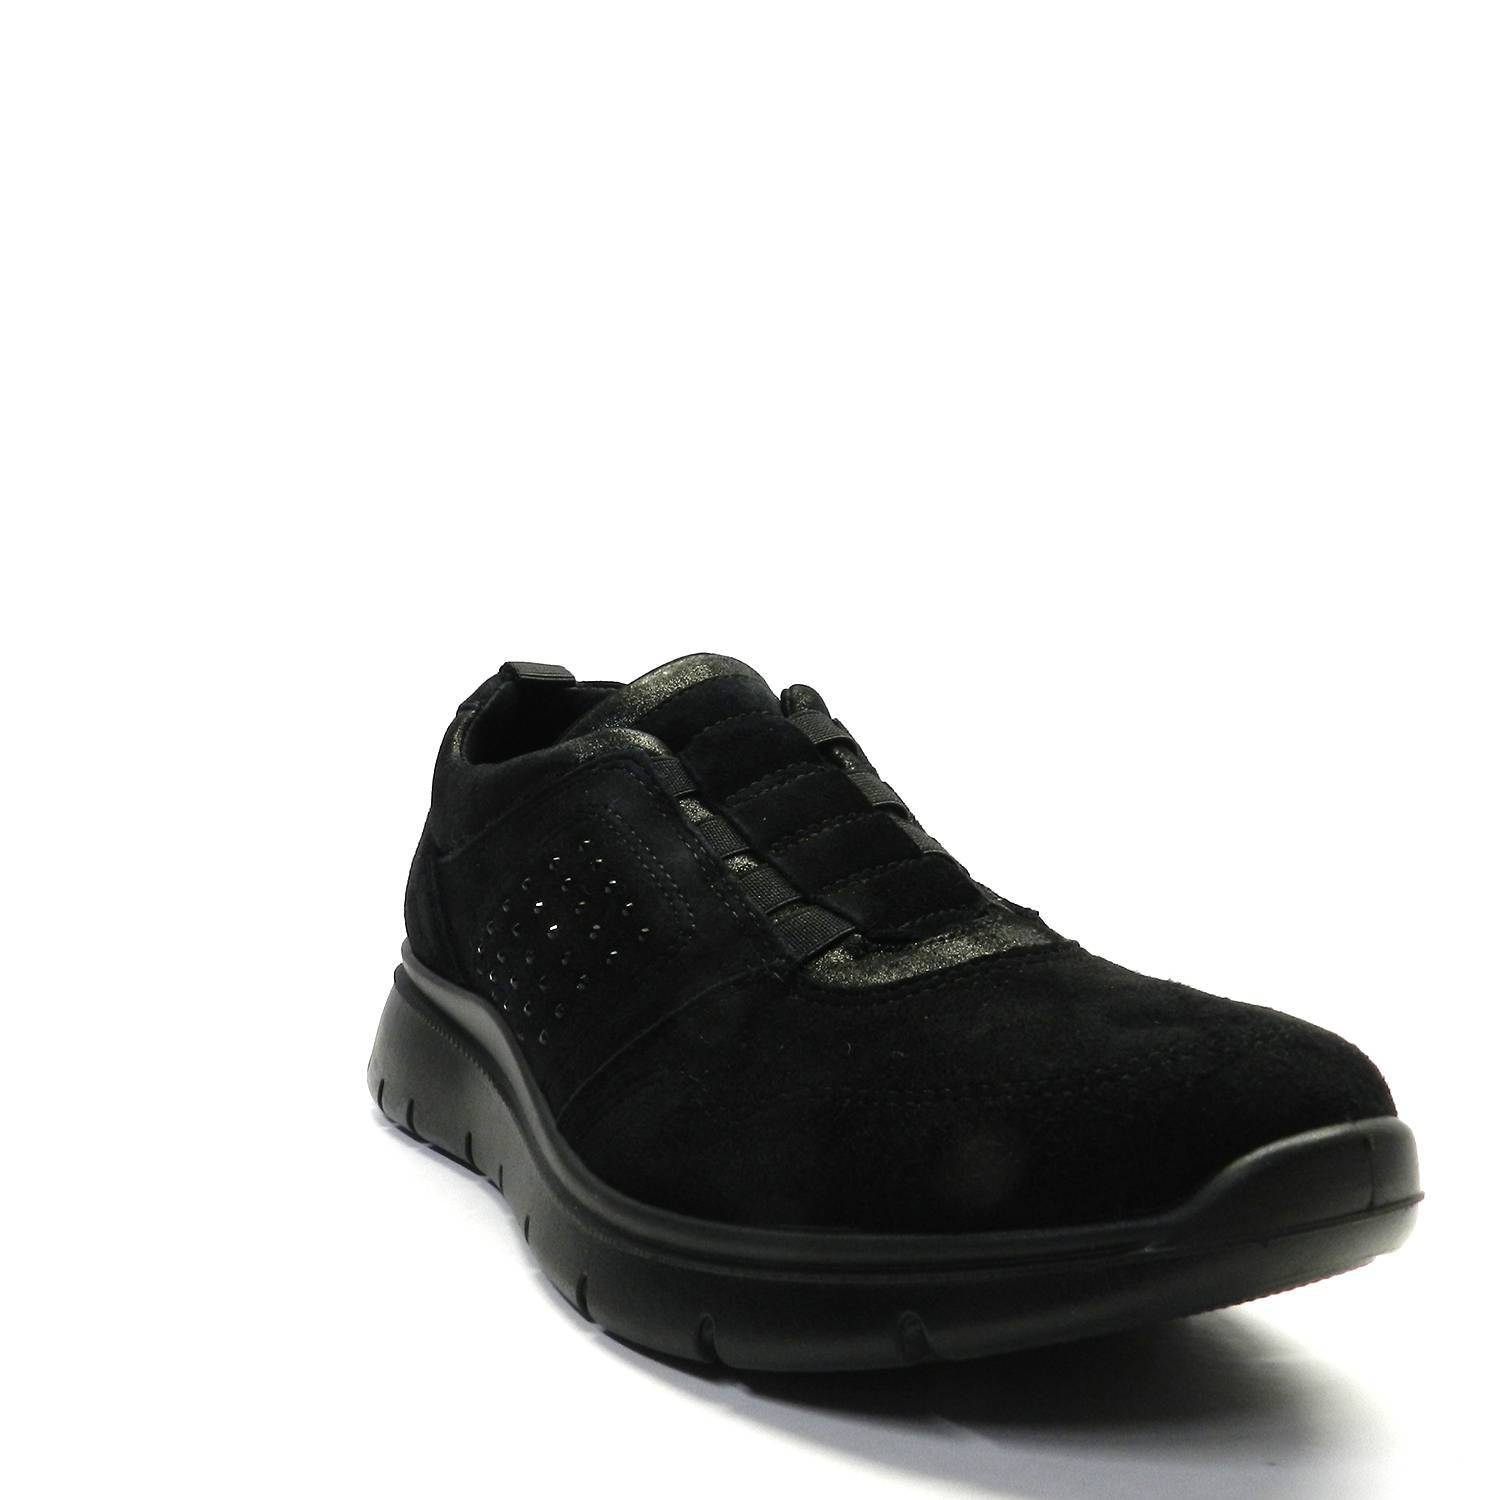 Zapatillas de la marca Imac, modelo 807231 en color negro. Zapatillas deportivas de ante, cierre con cordones. Suela de goma antideslizante. Plantilla extraíble de piel.